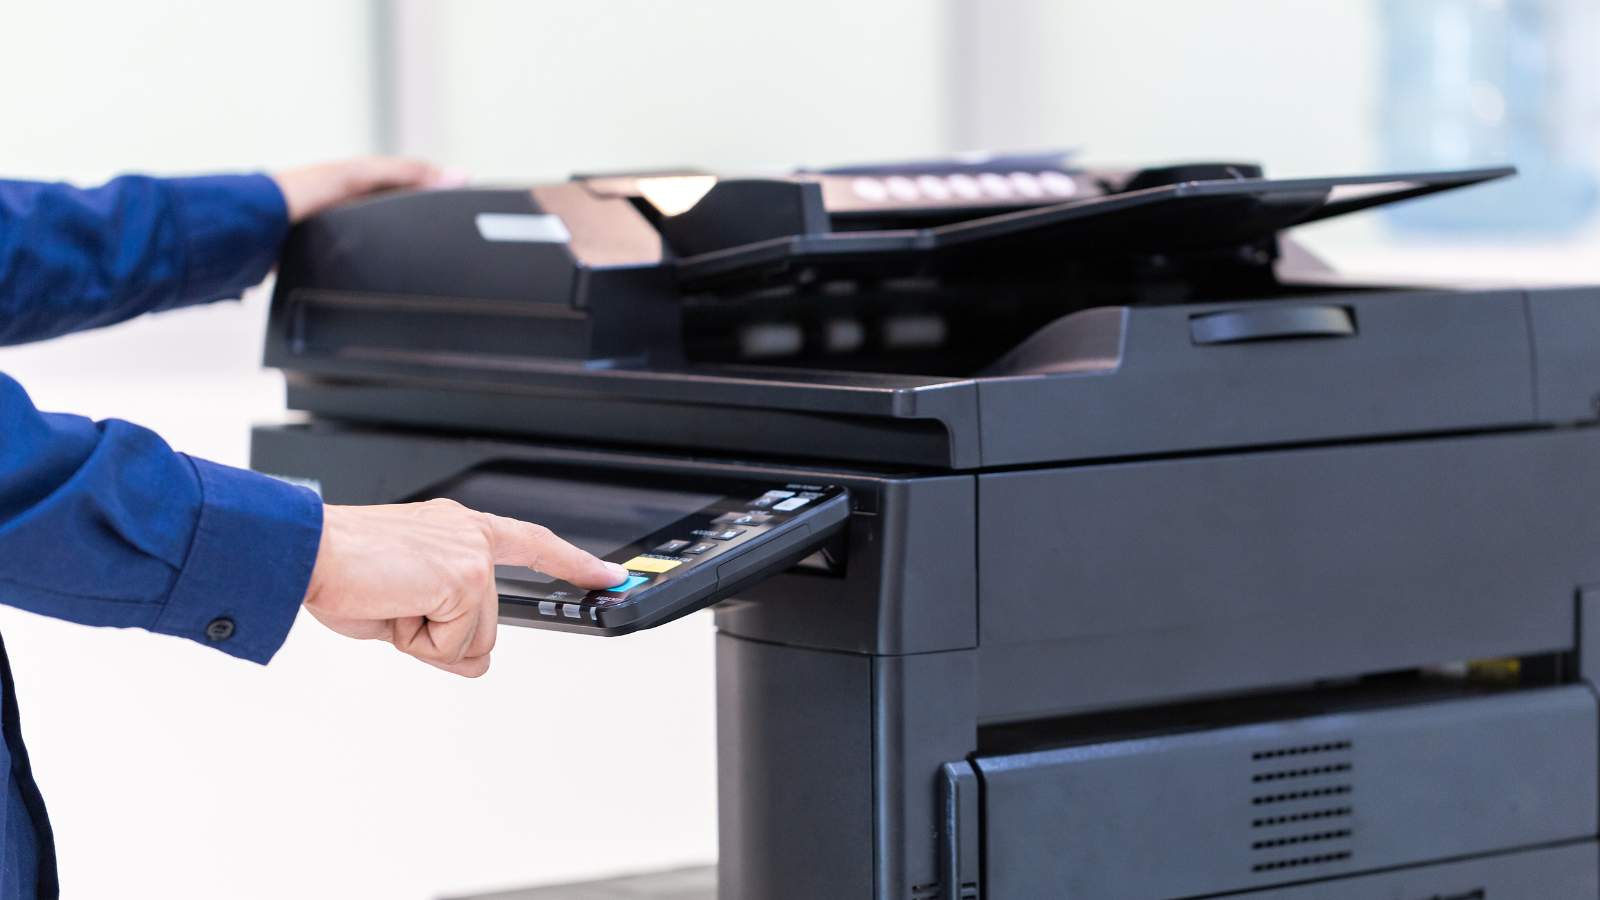 Je bekijkt nu Welke factoren bepalen de keuze voor een zakelijke printer?